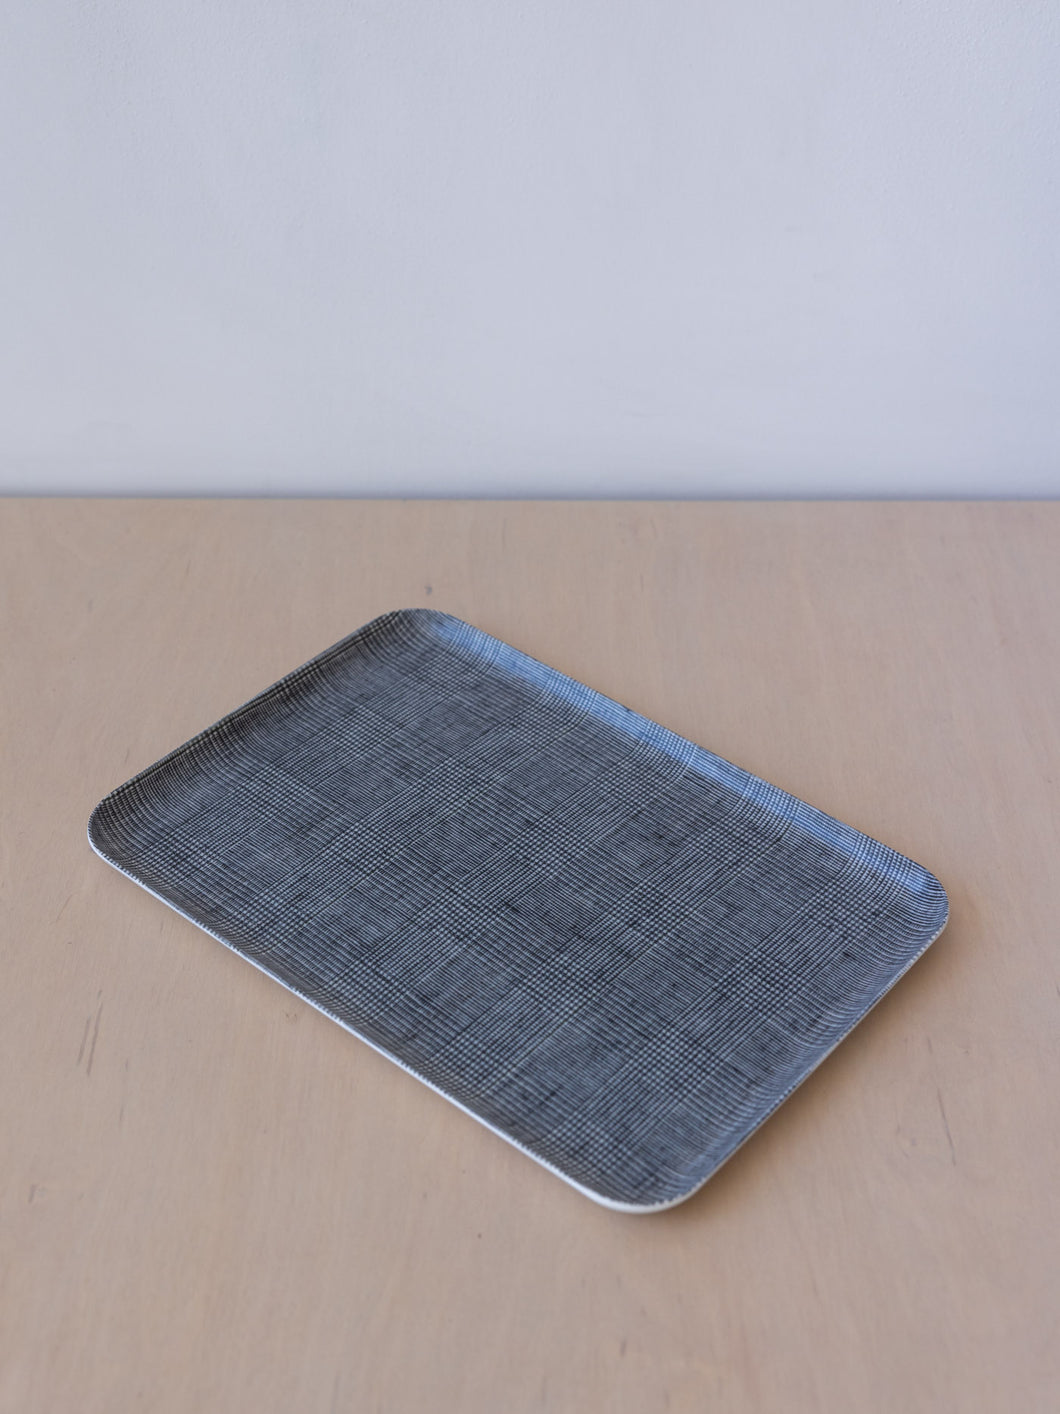 Linen Coating Tray Medium – The Arc